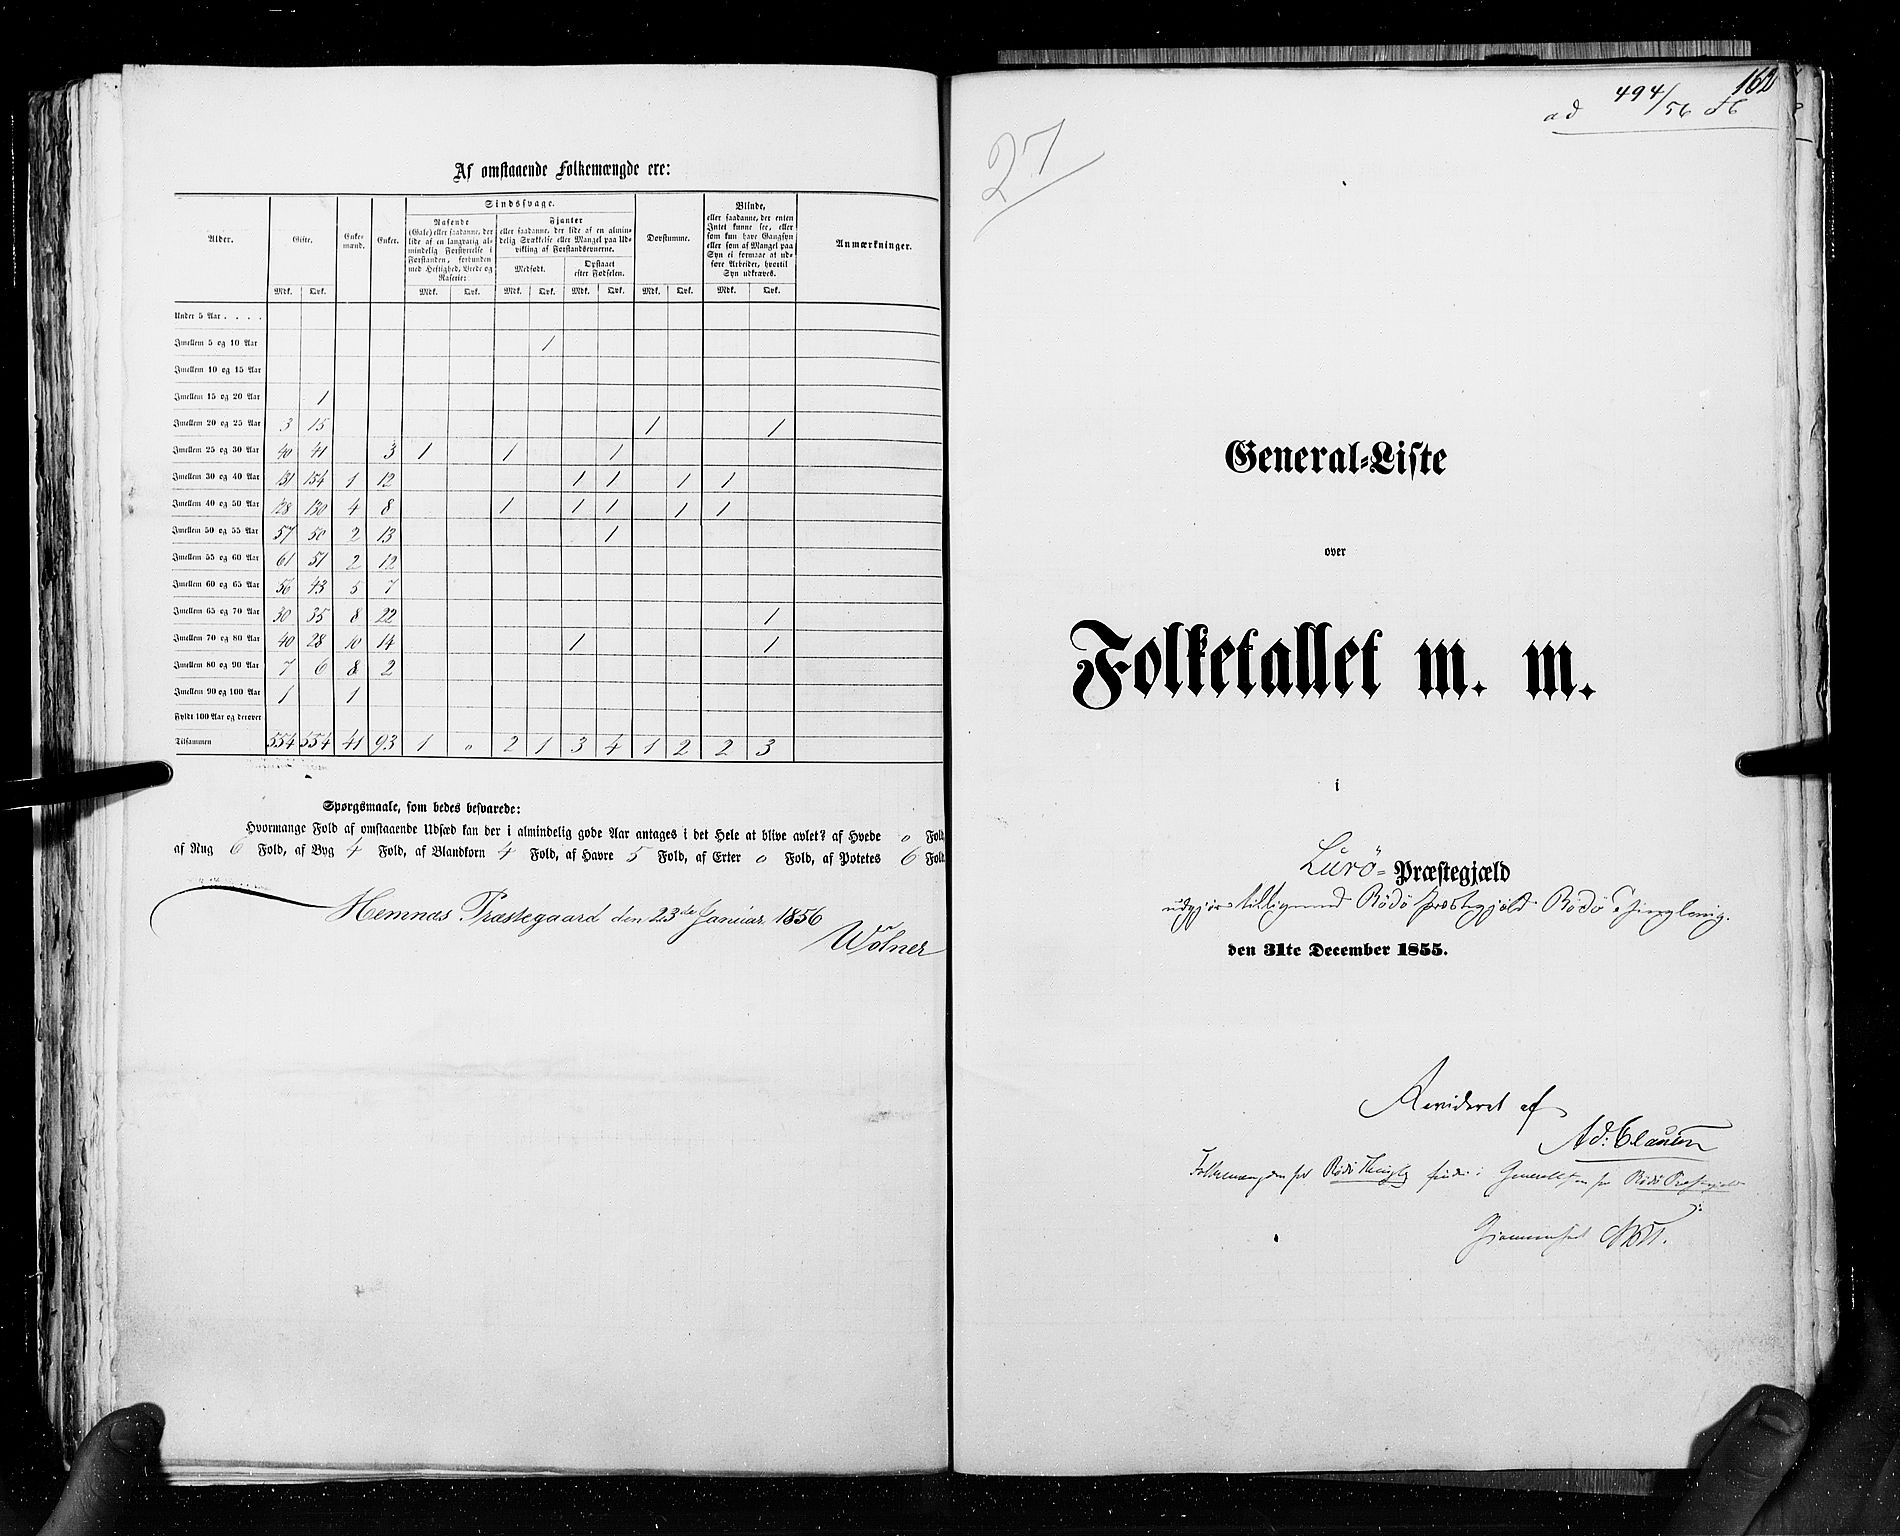 RA, Census 1855, vol. 6A: Nordre Trondhjem amt og Nordland amt, 1855, p. 162